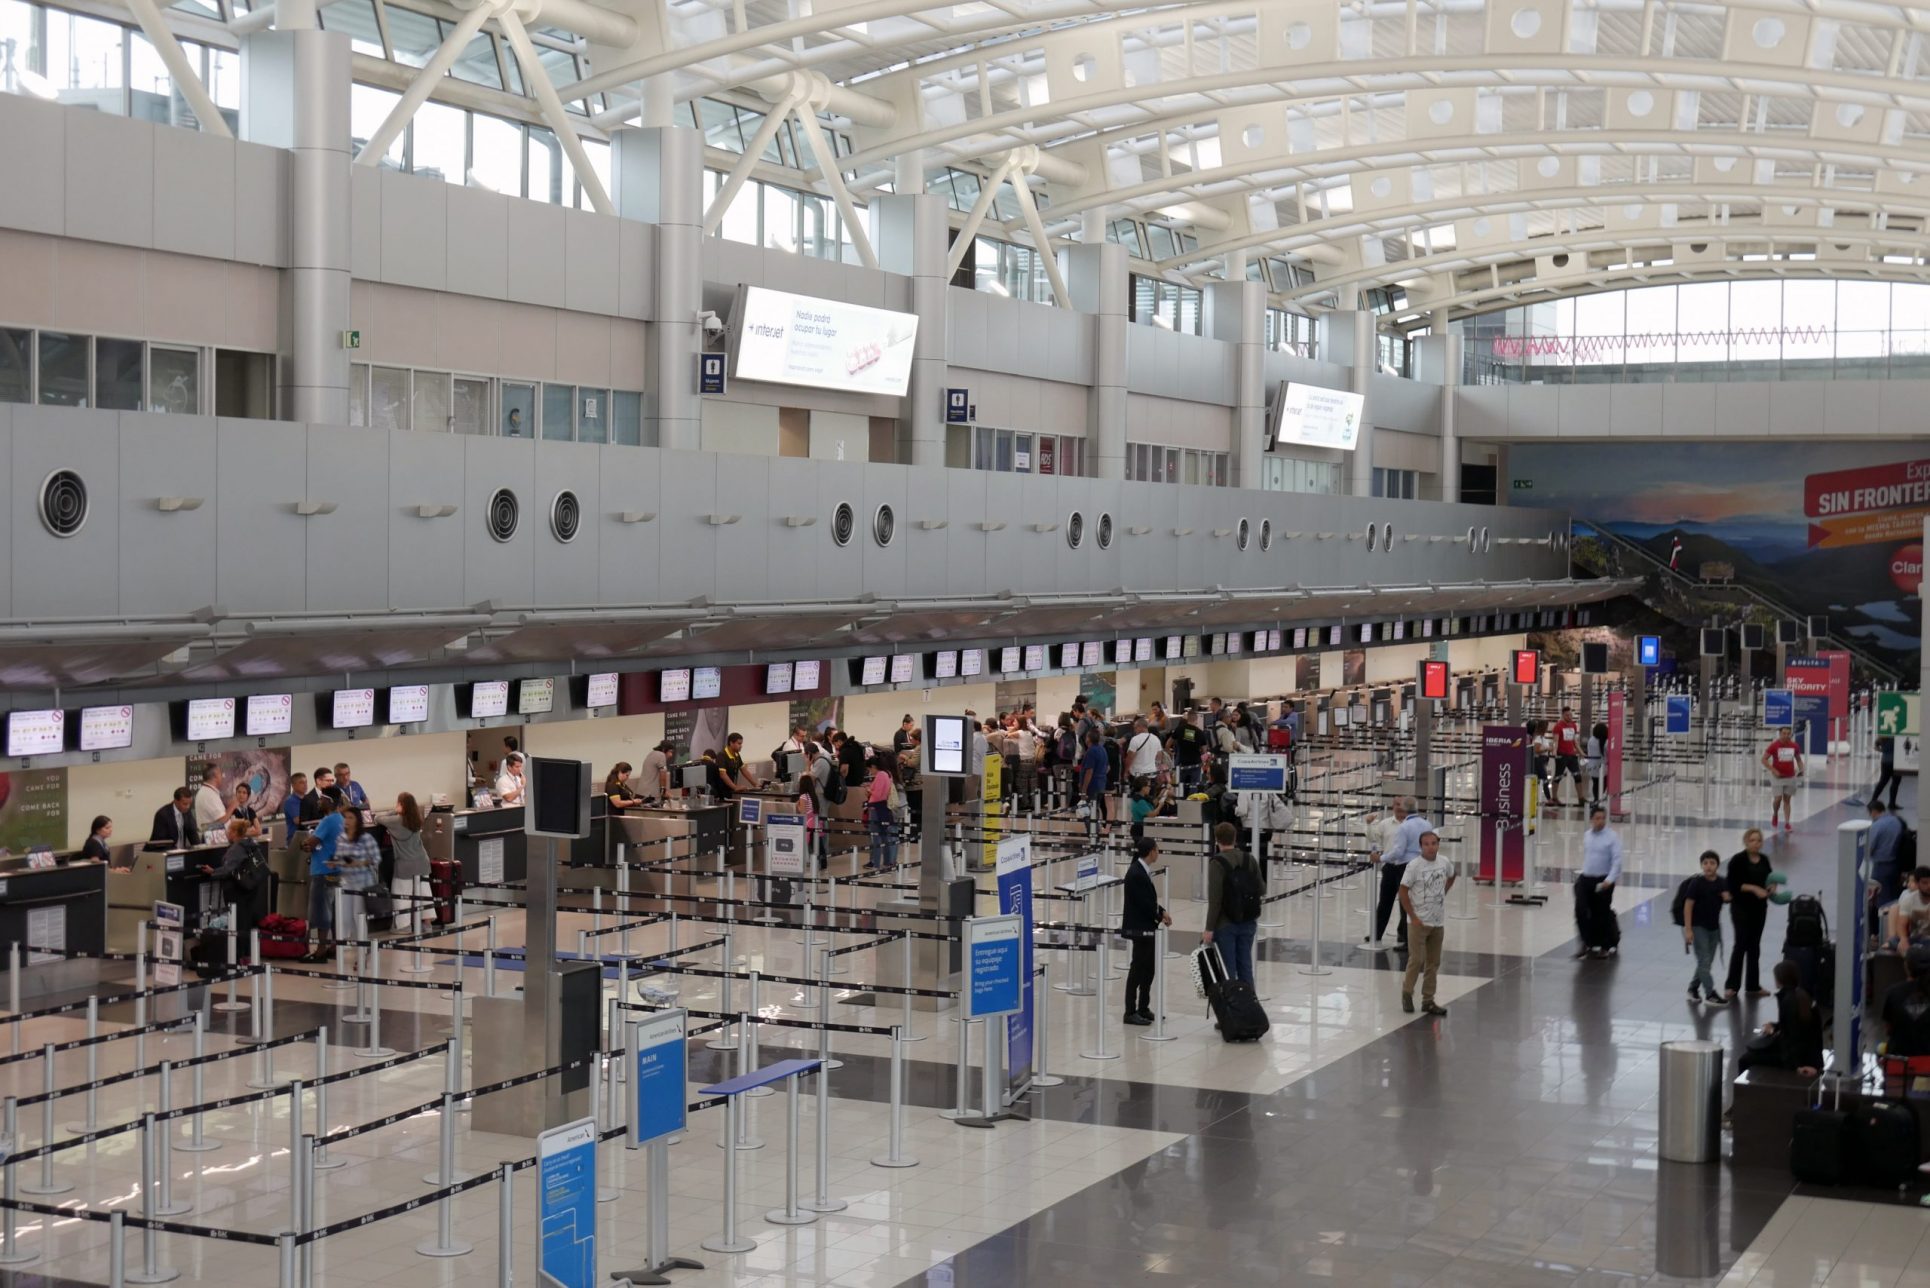 Jerarca del MOPT: “Estamos absolutamente listos” para abrir aeropuertos